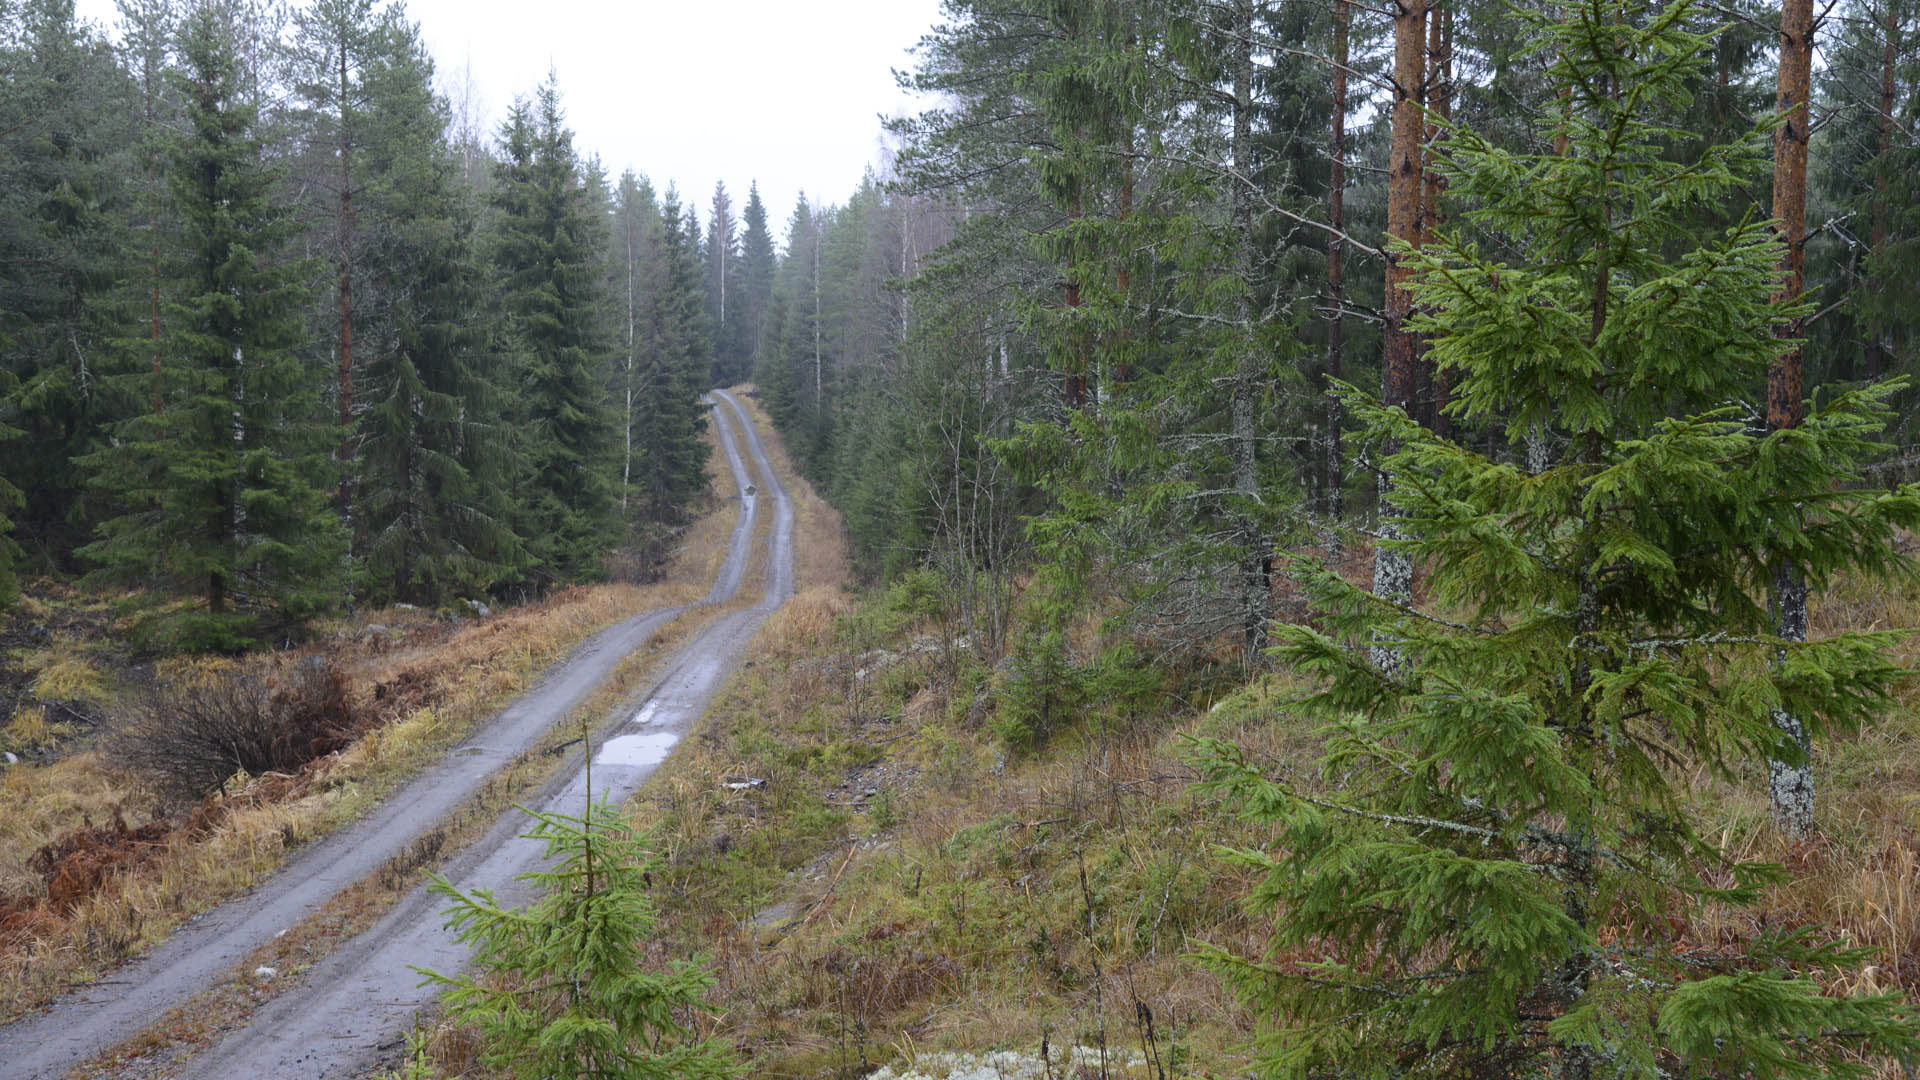 Novembre per la Finlandia  il mese pi piovoso. Le temperature sono per risultate miti, decisamente superiori alla media